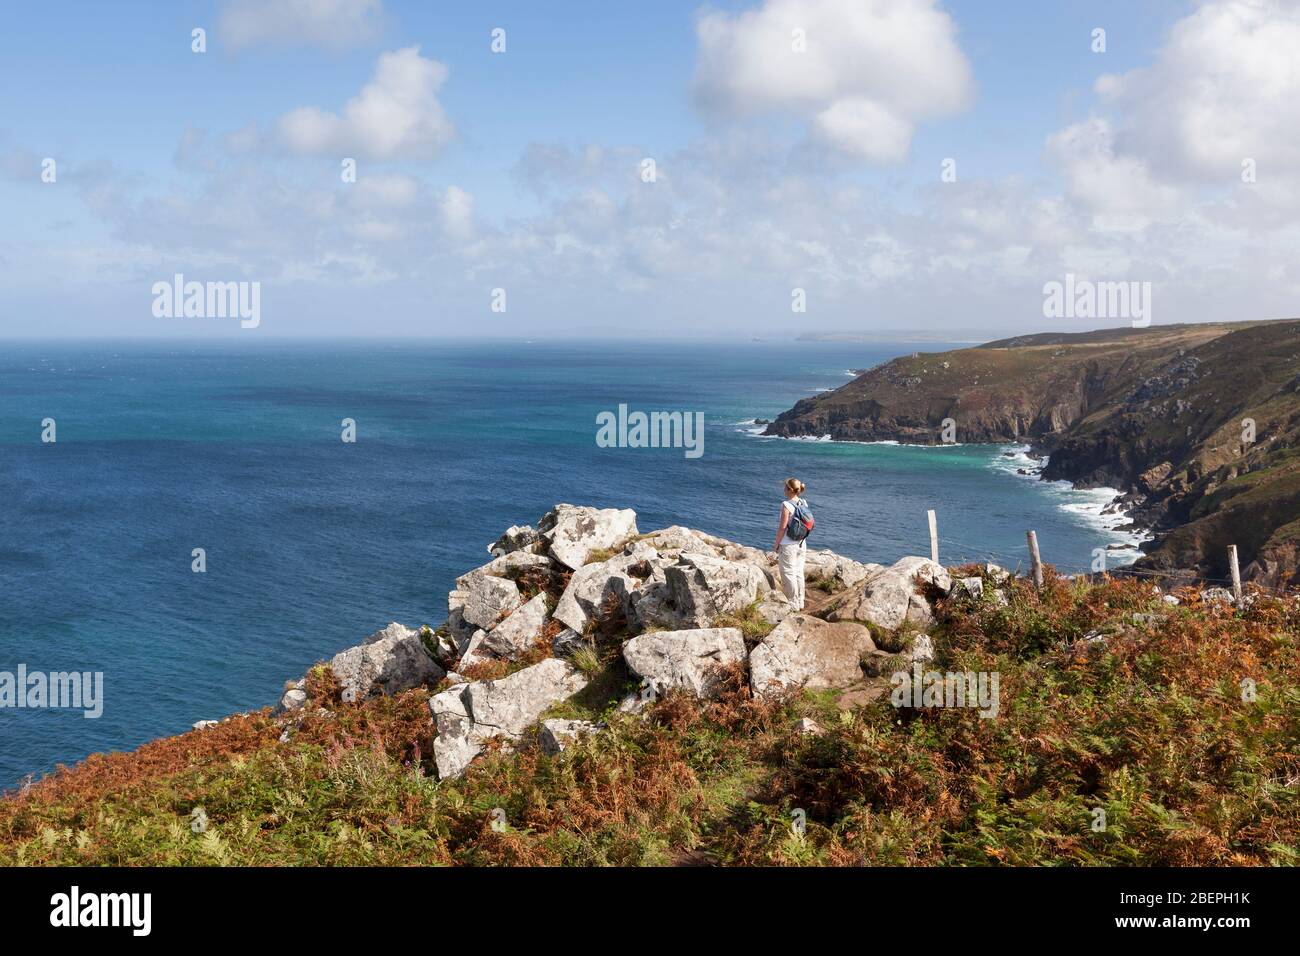 Donna in piedi su una scogliera rocciosa che guarda lo splendido paesaggio costiero vicino a St Ives in Cornovaglia, Inghilterra, Regno Unito Foto Stock